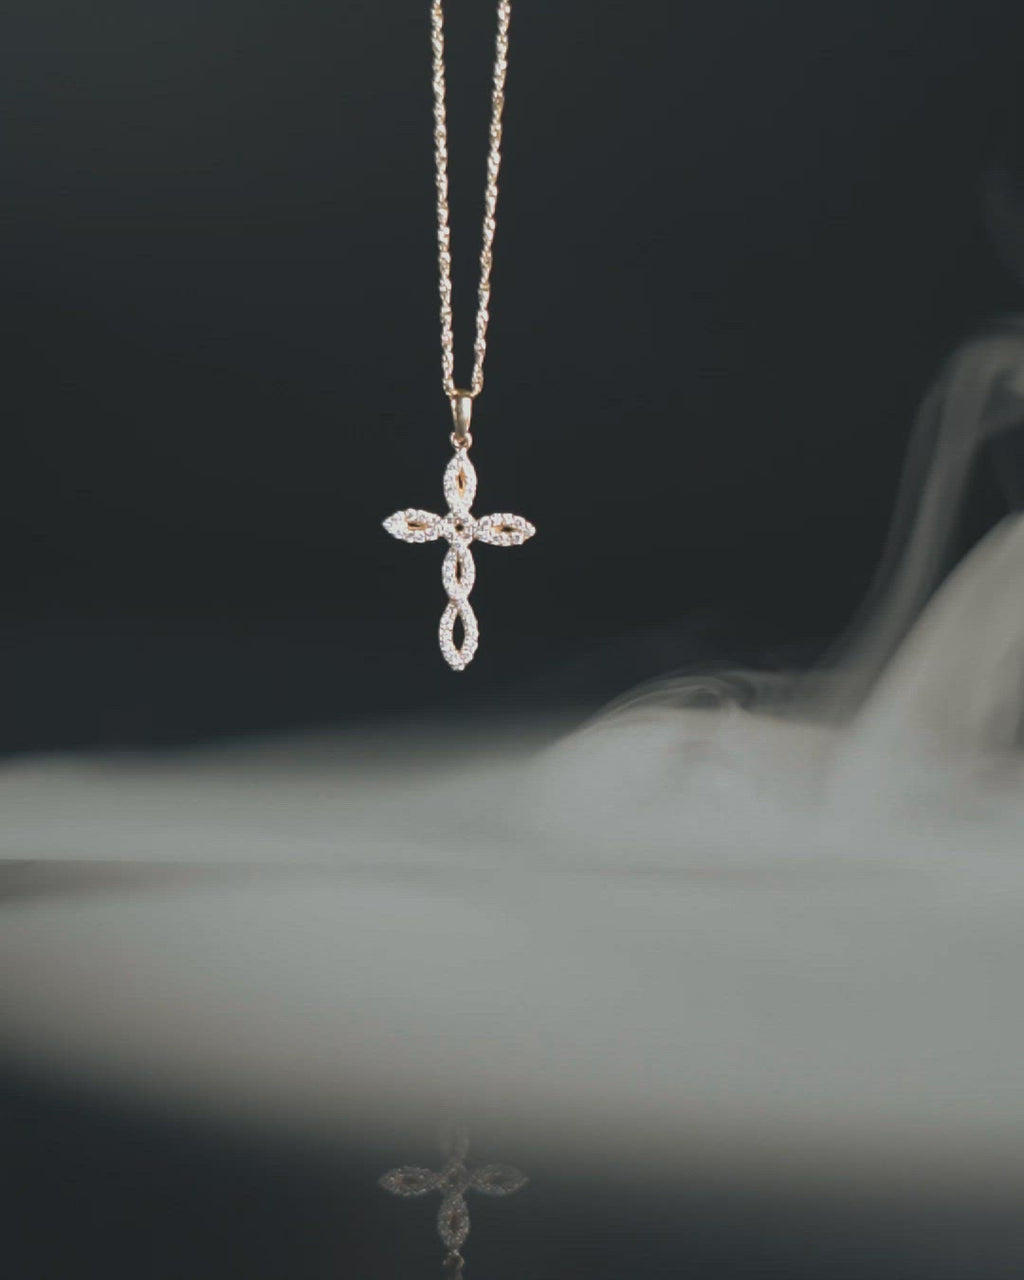 Γυναικείος σταυρός από χρυσό Κ18 με διαμάντια και στριφτή αλυσίδα. Μοναδικό σχέδιο ιδιαίτερης πλέξης. 